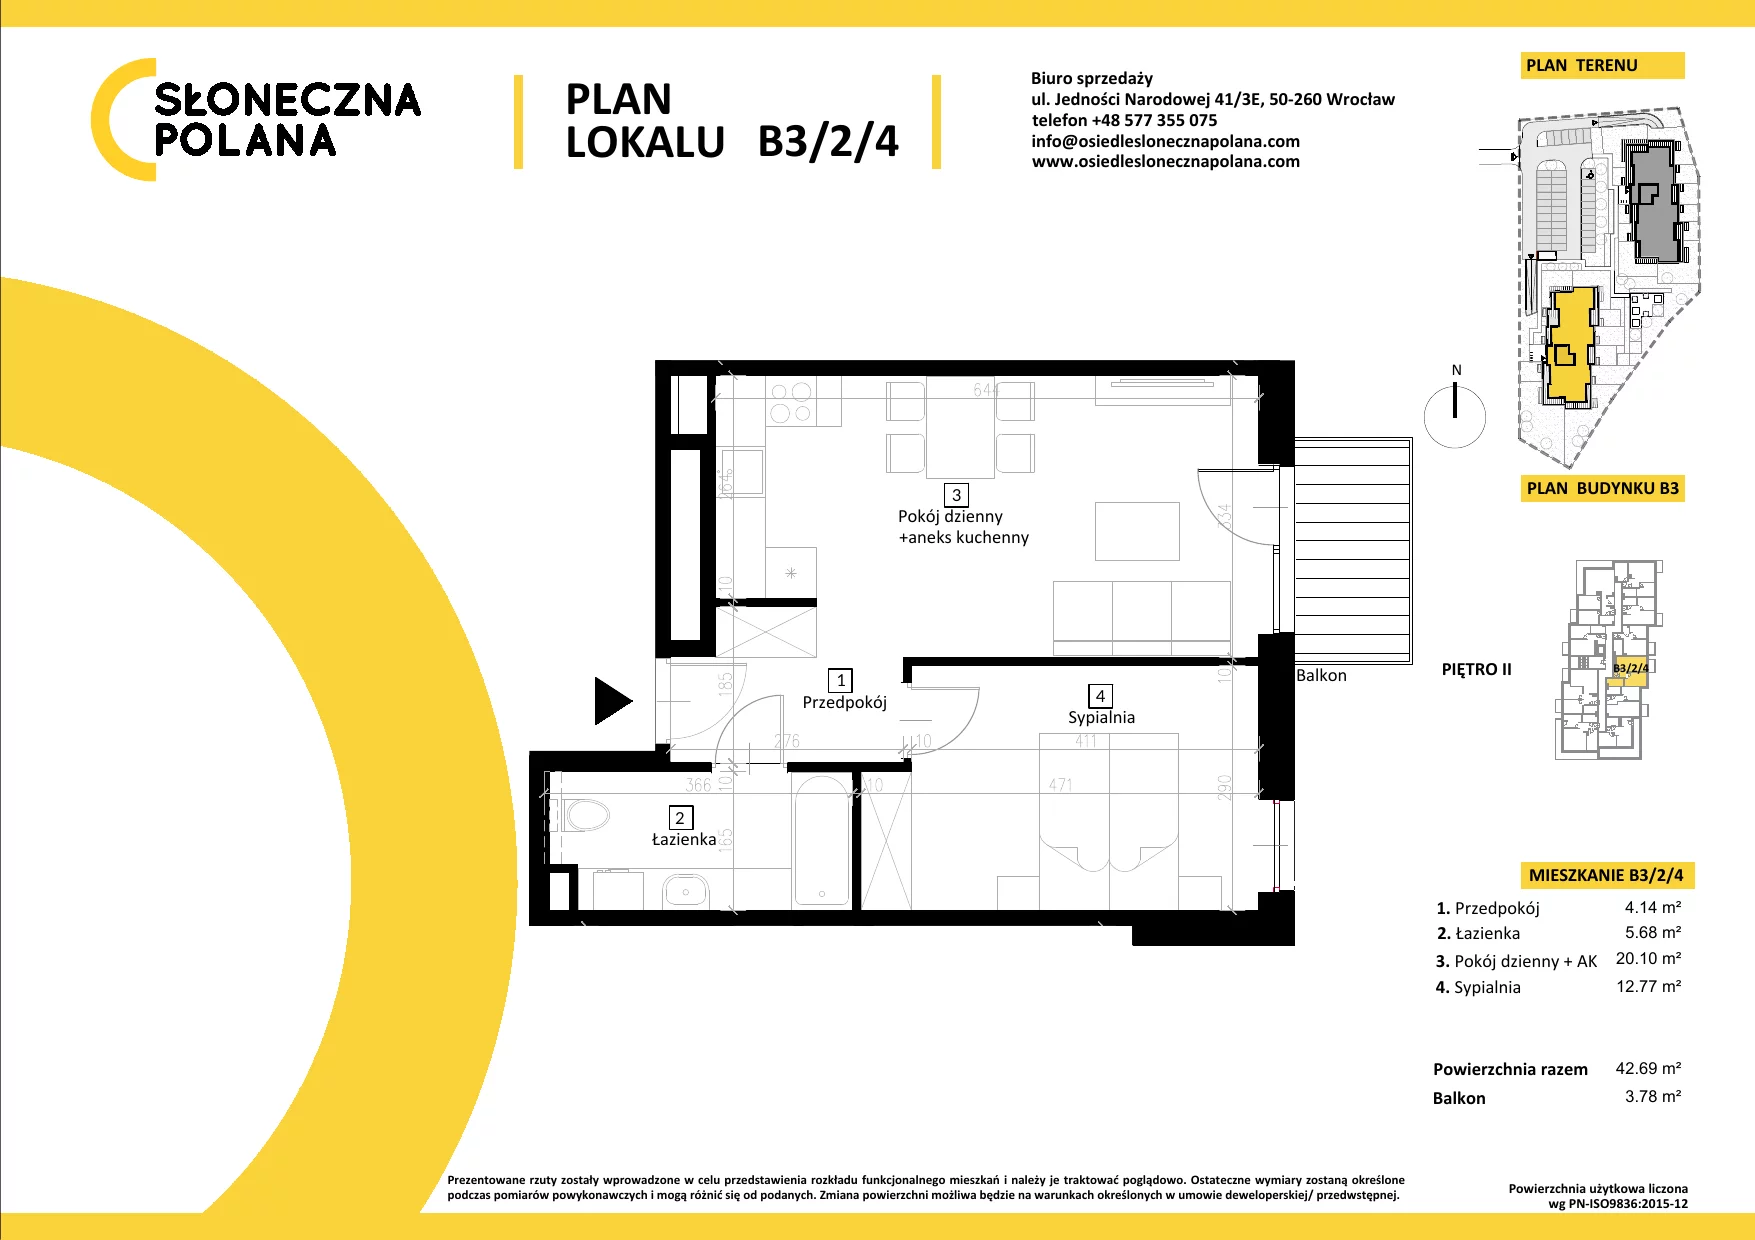 Mieszkanie 42,69 m², piętro 2, oferta nr B3/2/4, Słoneczna Polana, Kudowa-Zdrój, ul. Bluszczowa